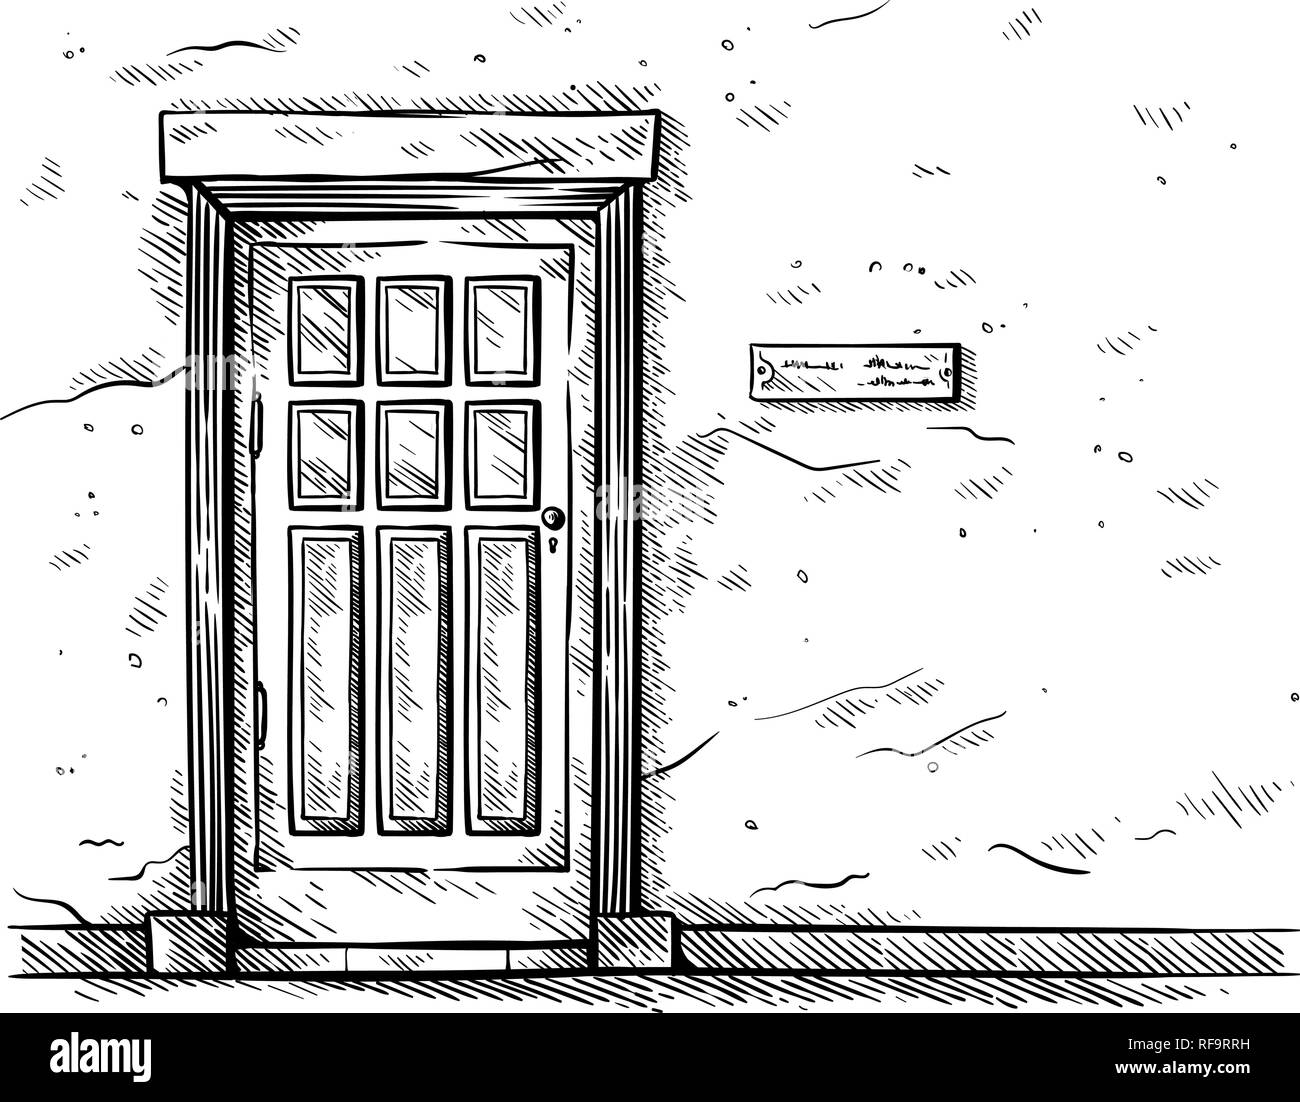 Croquis dessinés à la main, vieille porte en bois rectangulaire en mur de briques illustraion de vecteur Illustration de Vecteur